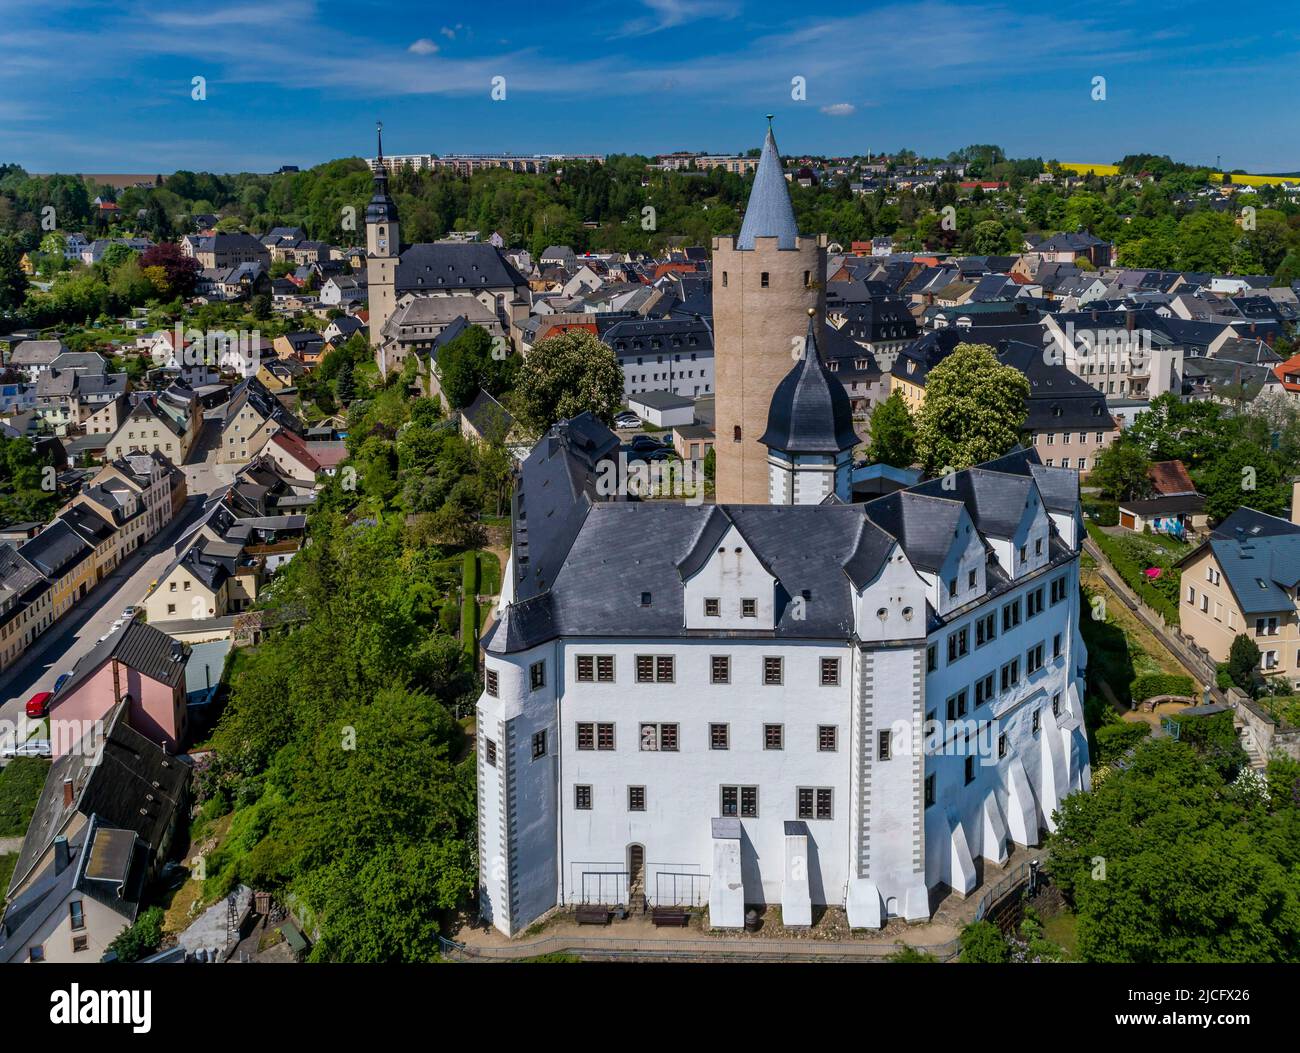 Schloss Wildeck: Die Altstadt von Zschopau mit ihrem mittelalterlichen Stadtplan ist ein denkmalgeschütztes Gebäude. Der überwiegende Teil des Gebäudes stammt aus der Mitte des 18.. Jahrhunderts aus der Zeit des Wiederaufbaus nach dem letzten Stadtbrand. Stockfoto